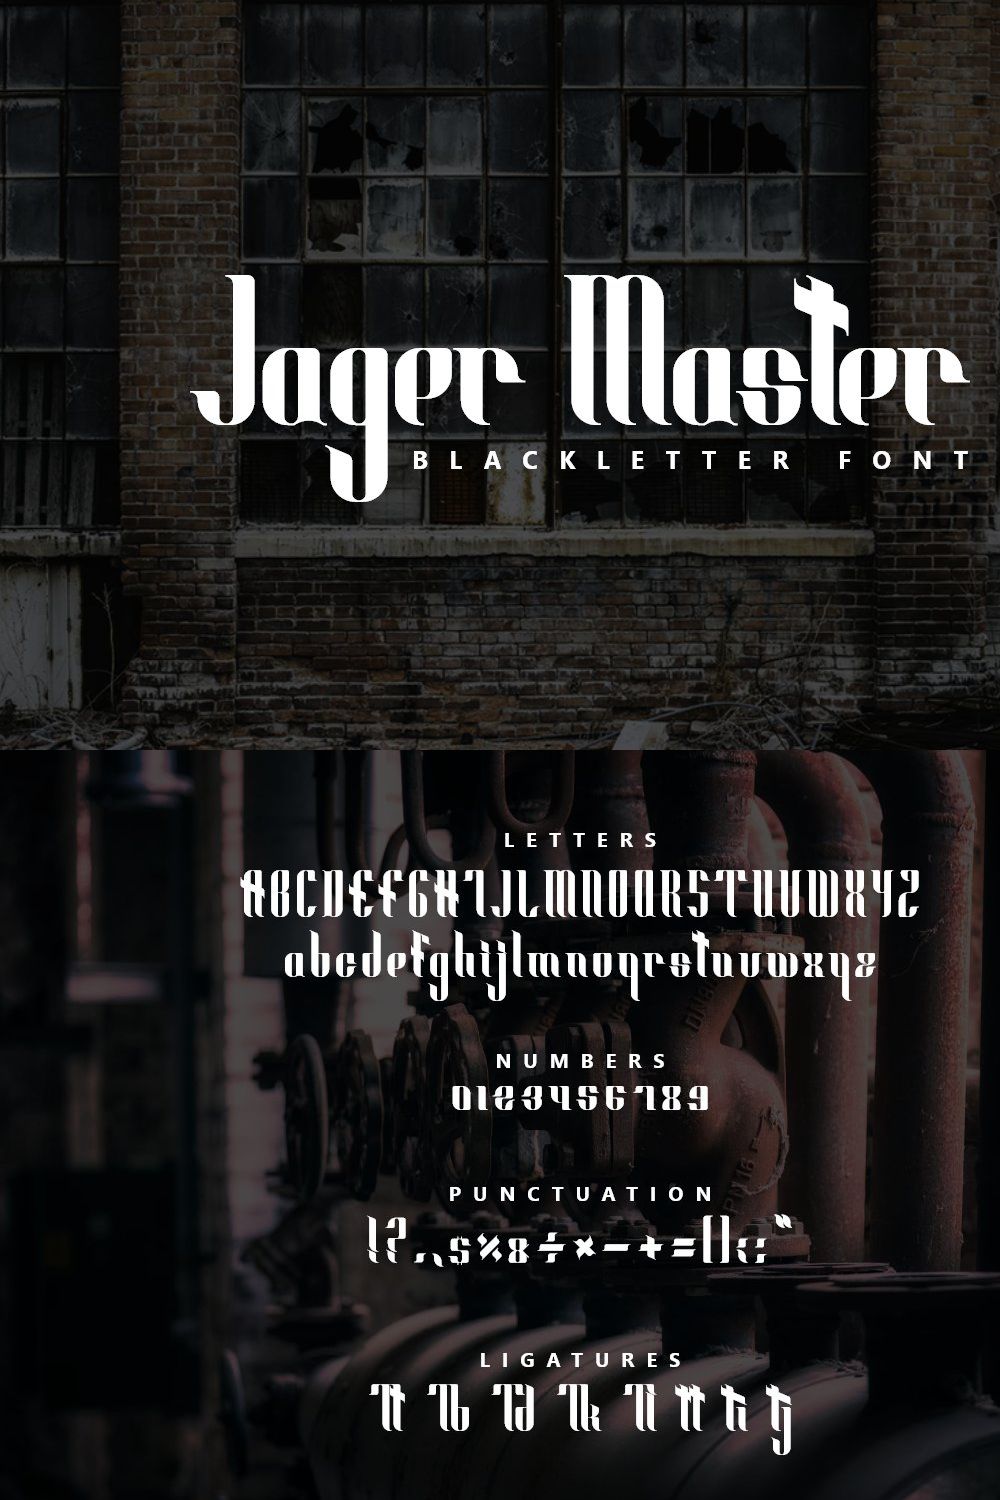 Jager Master Modern Blackletter Font pinterest preview image.